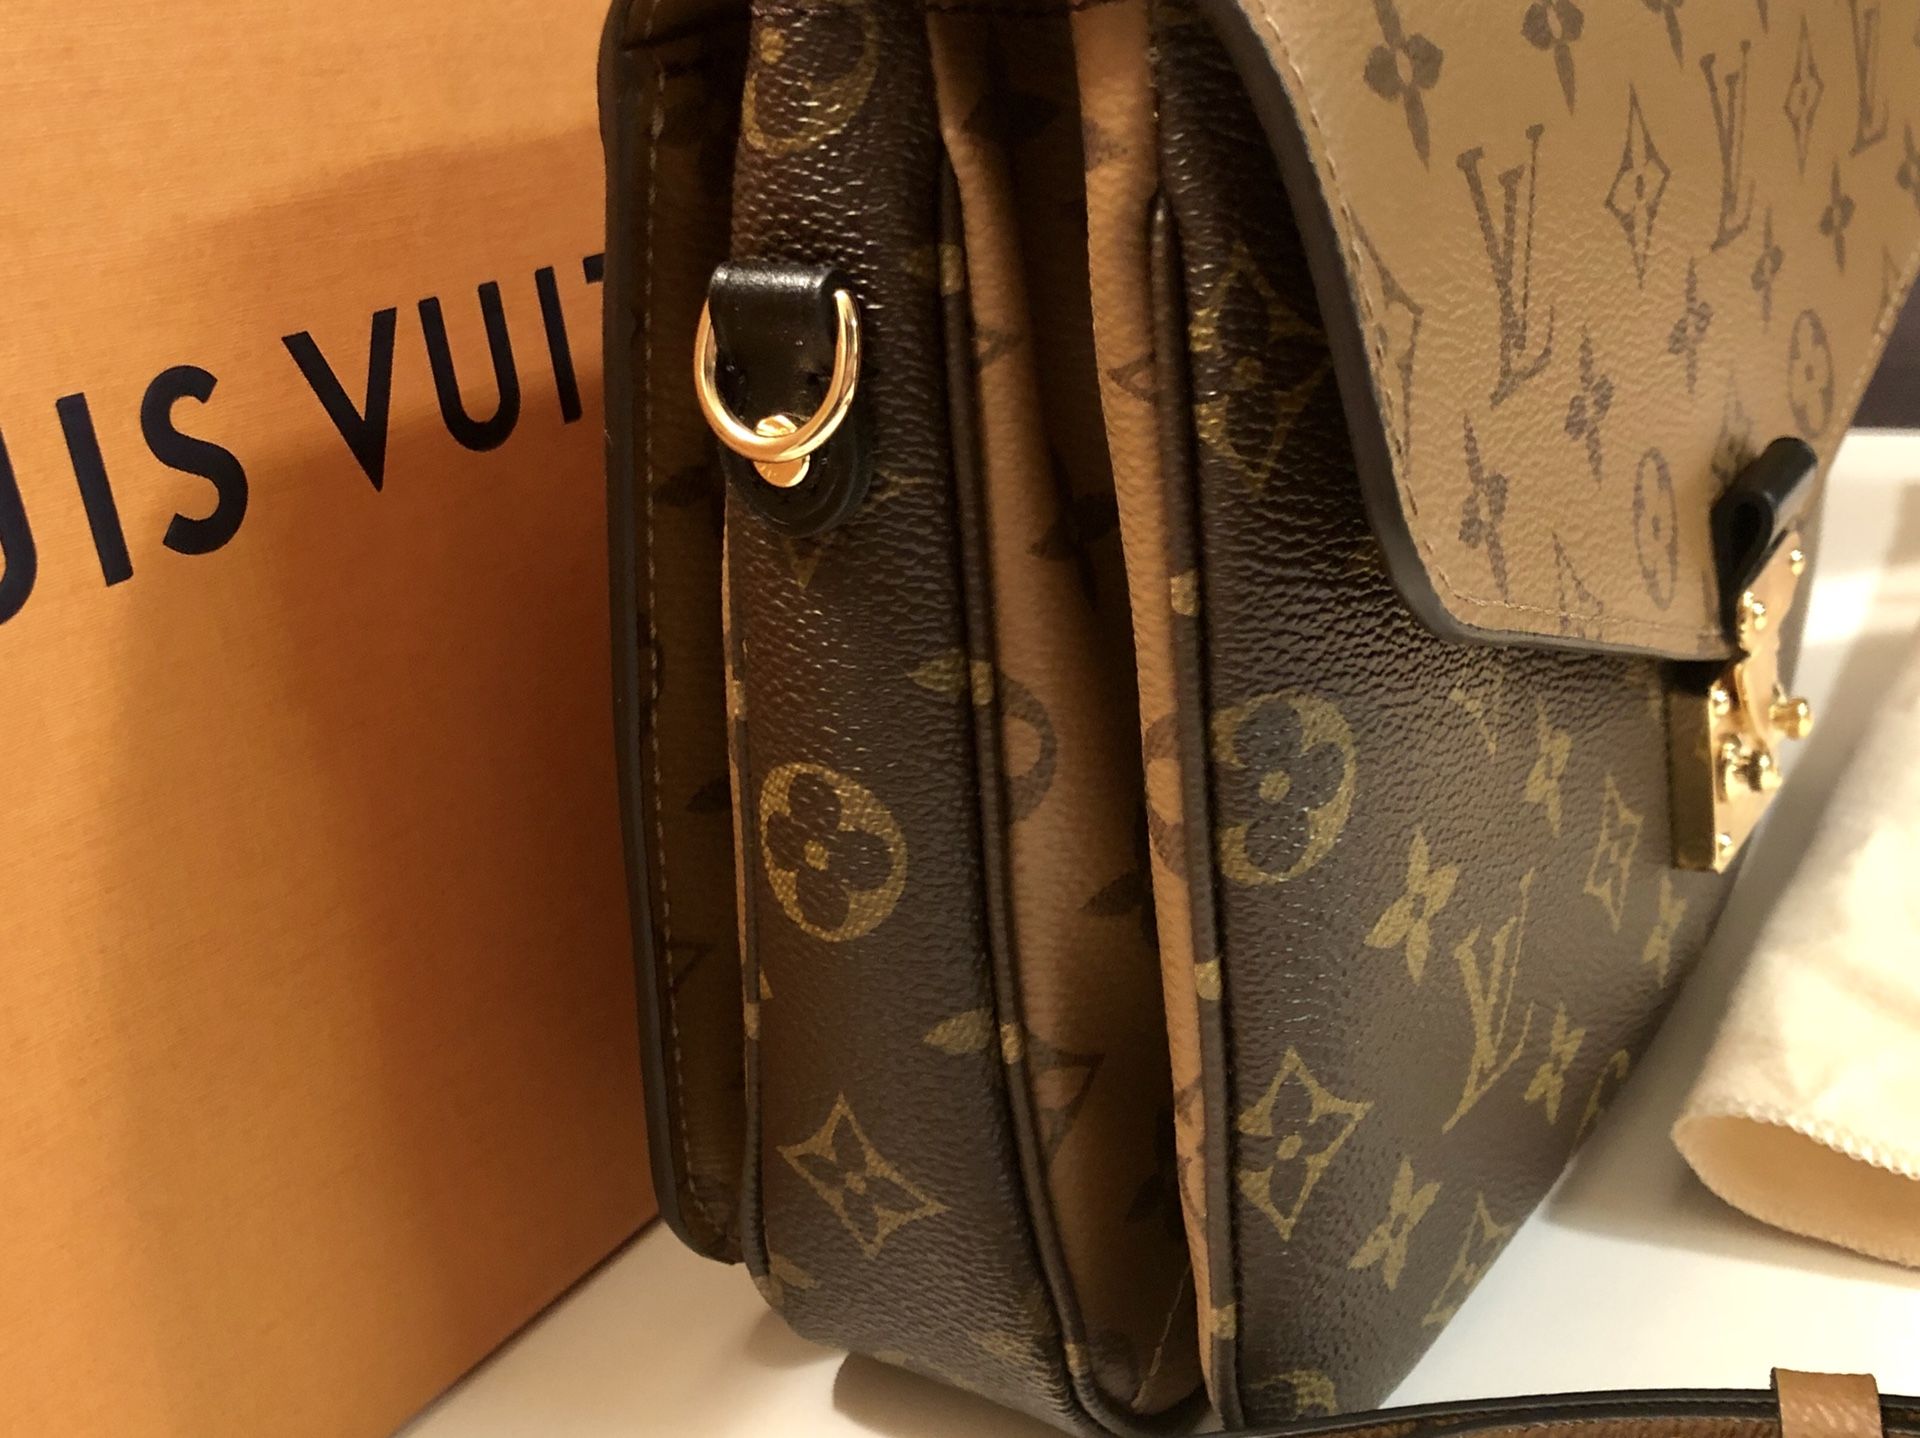 Louis Vuitton Pochette metis M41465 for Sale in Brisbane, CA - OfferUp